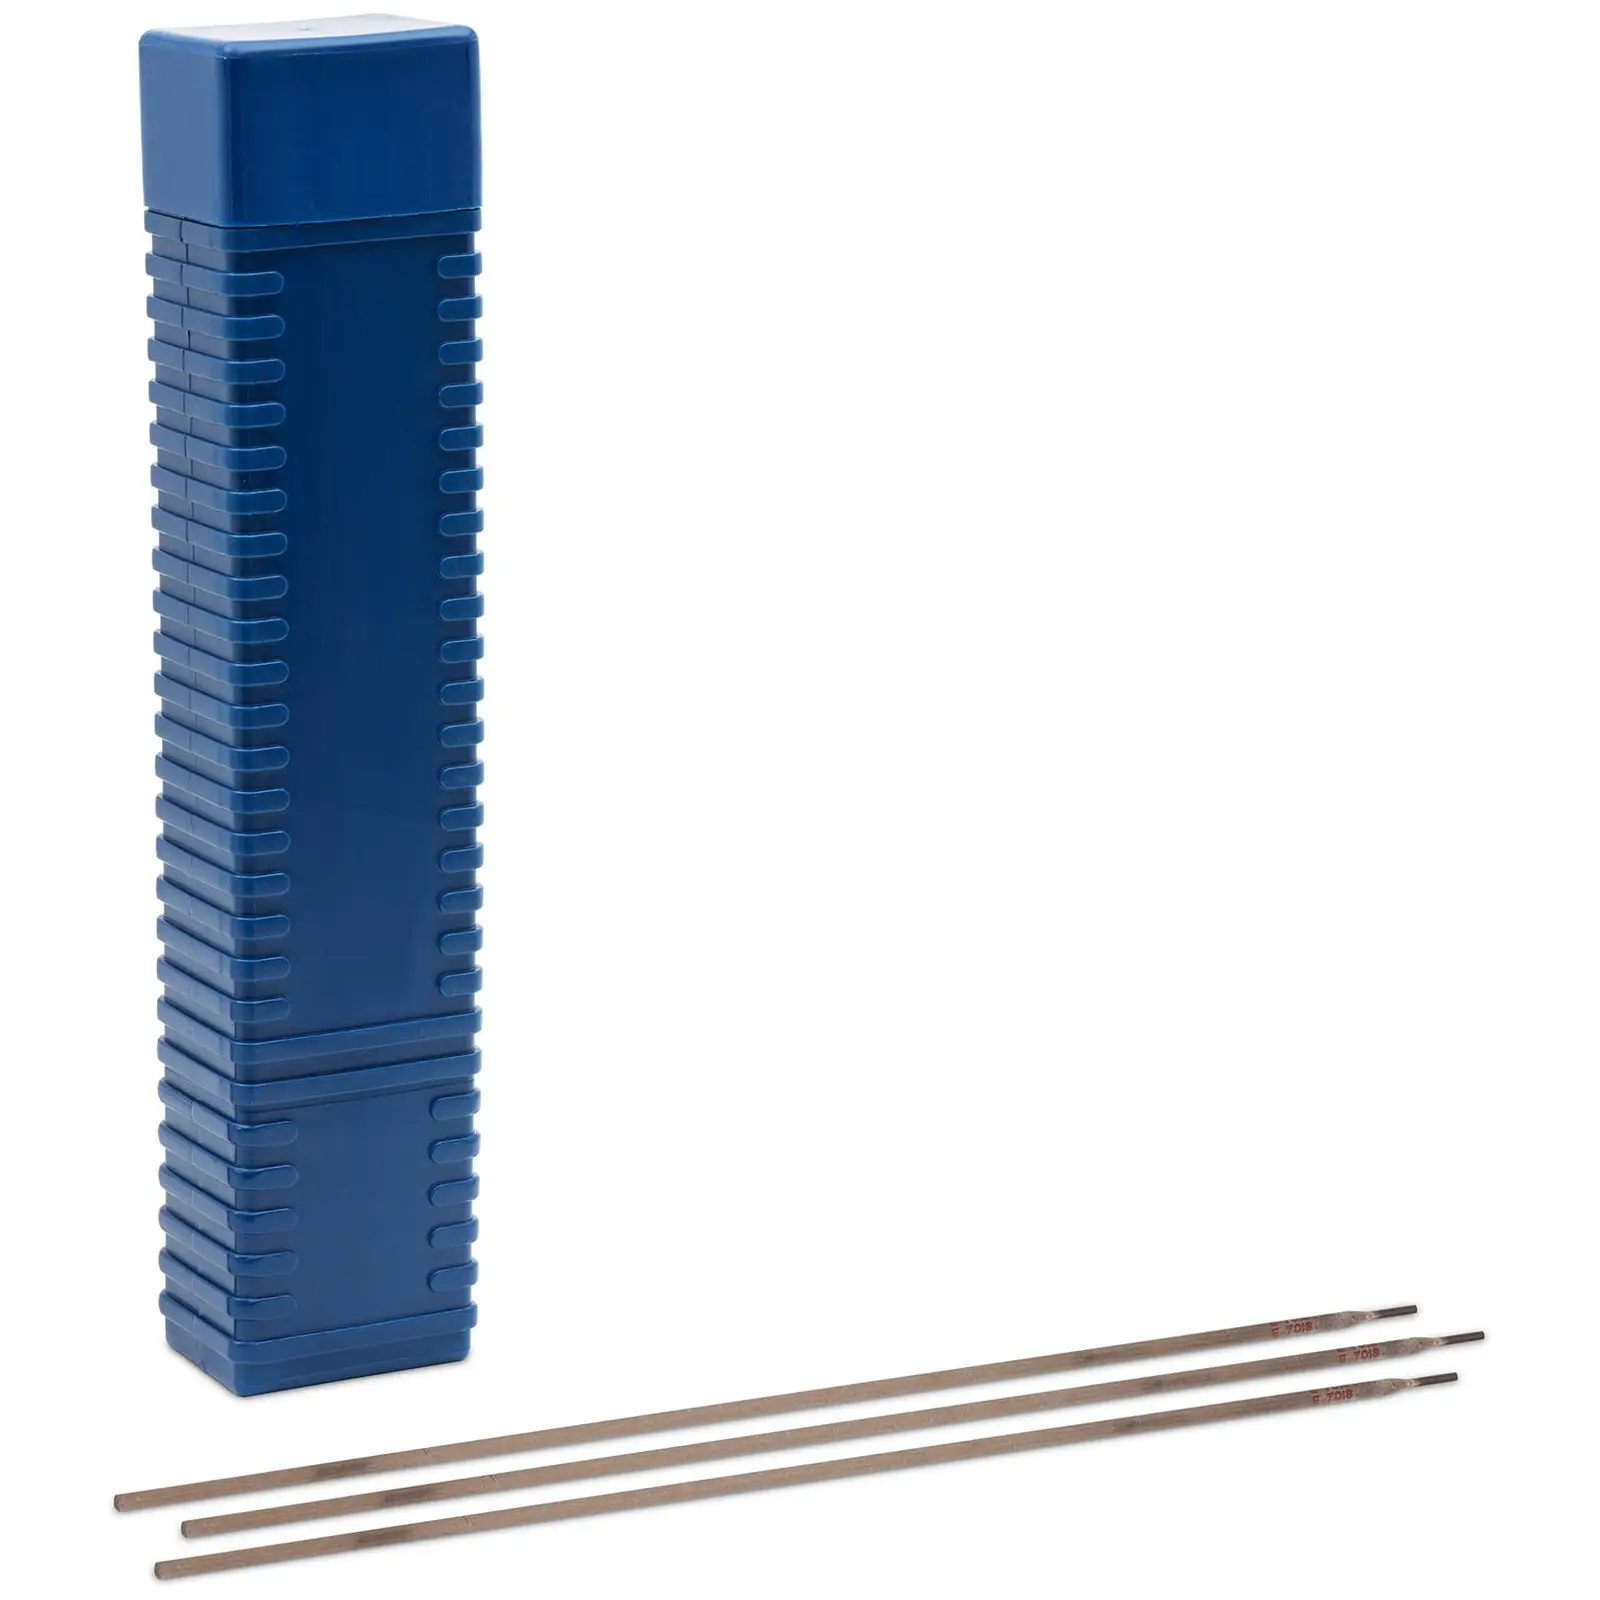 Svetselektroder för stål - E7018 - Basiska - Ø 3.25 x 450 mm - 5 kg